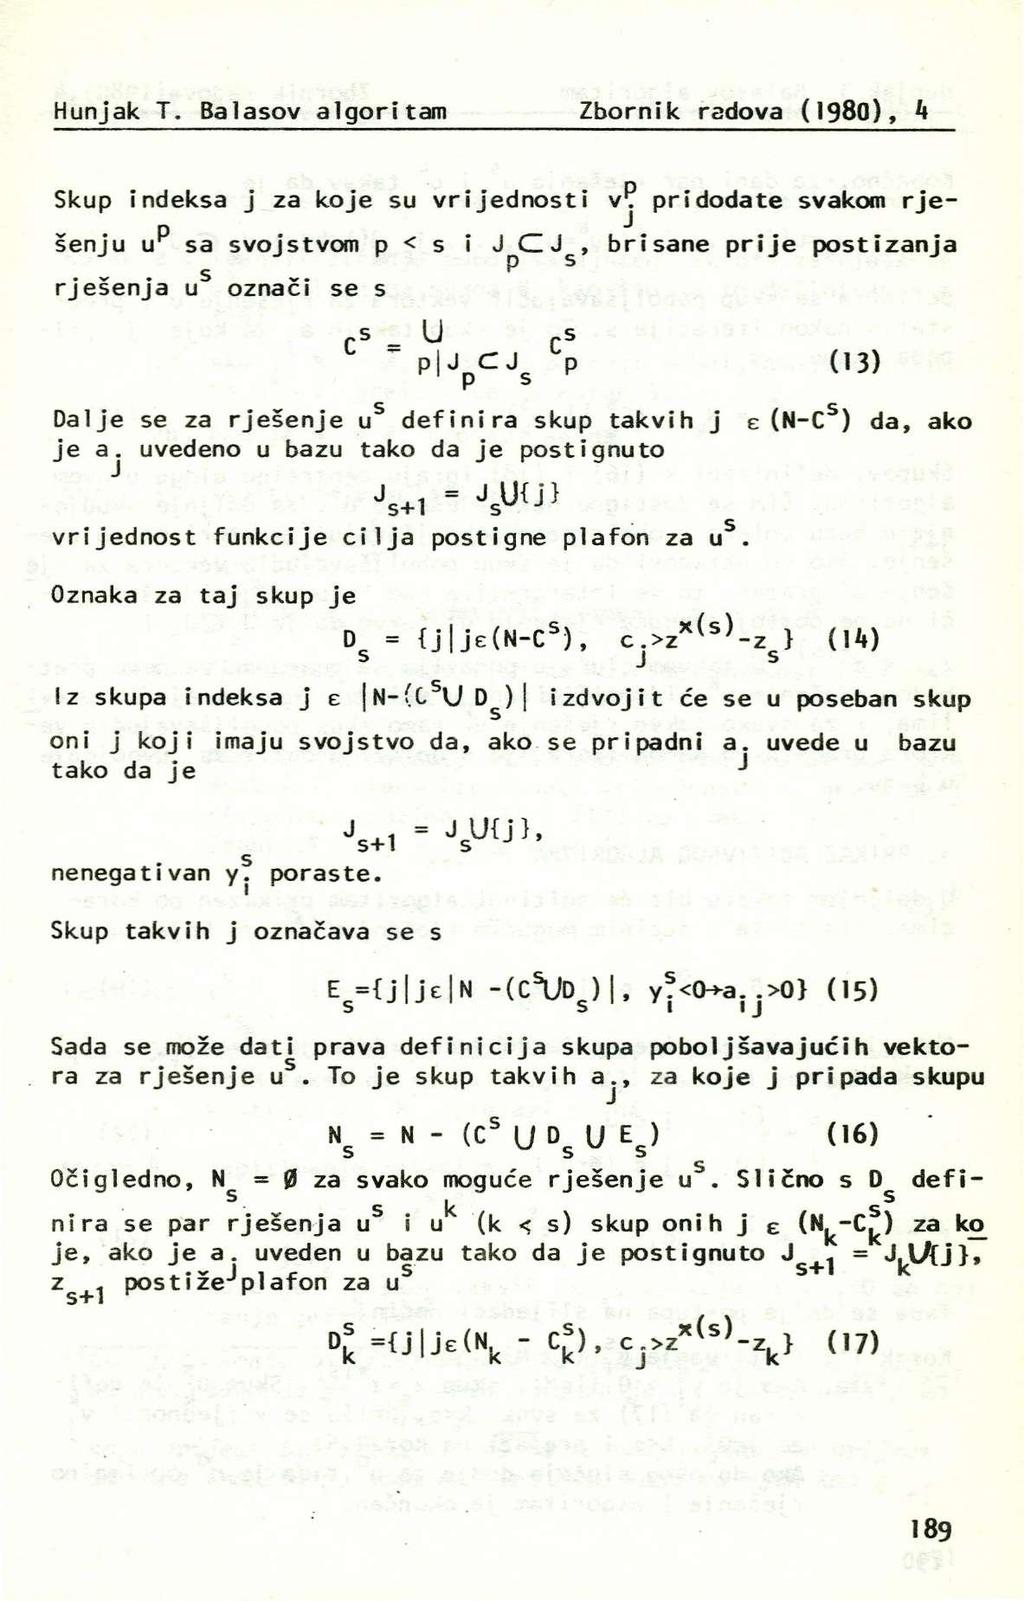 Hunjak T. Balaov algoritam Zbornik radova (198), 4 Skup indeka j za koje u vrijednoti vp. pridodate vakom rjep -1 šenju u a vojtvom p < i C, briane prije potizanja P.